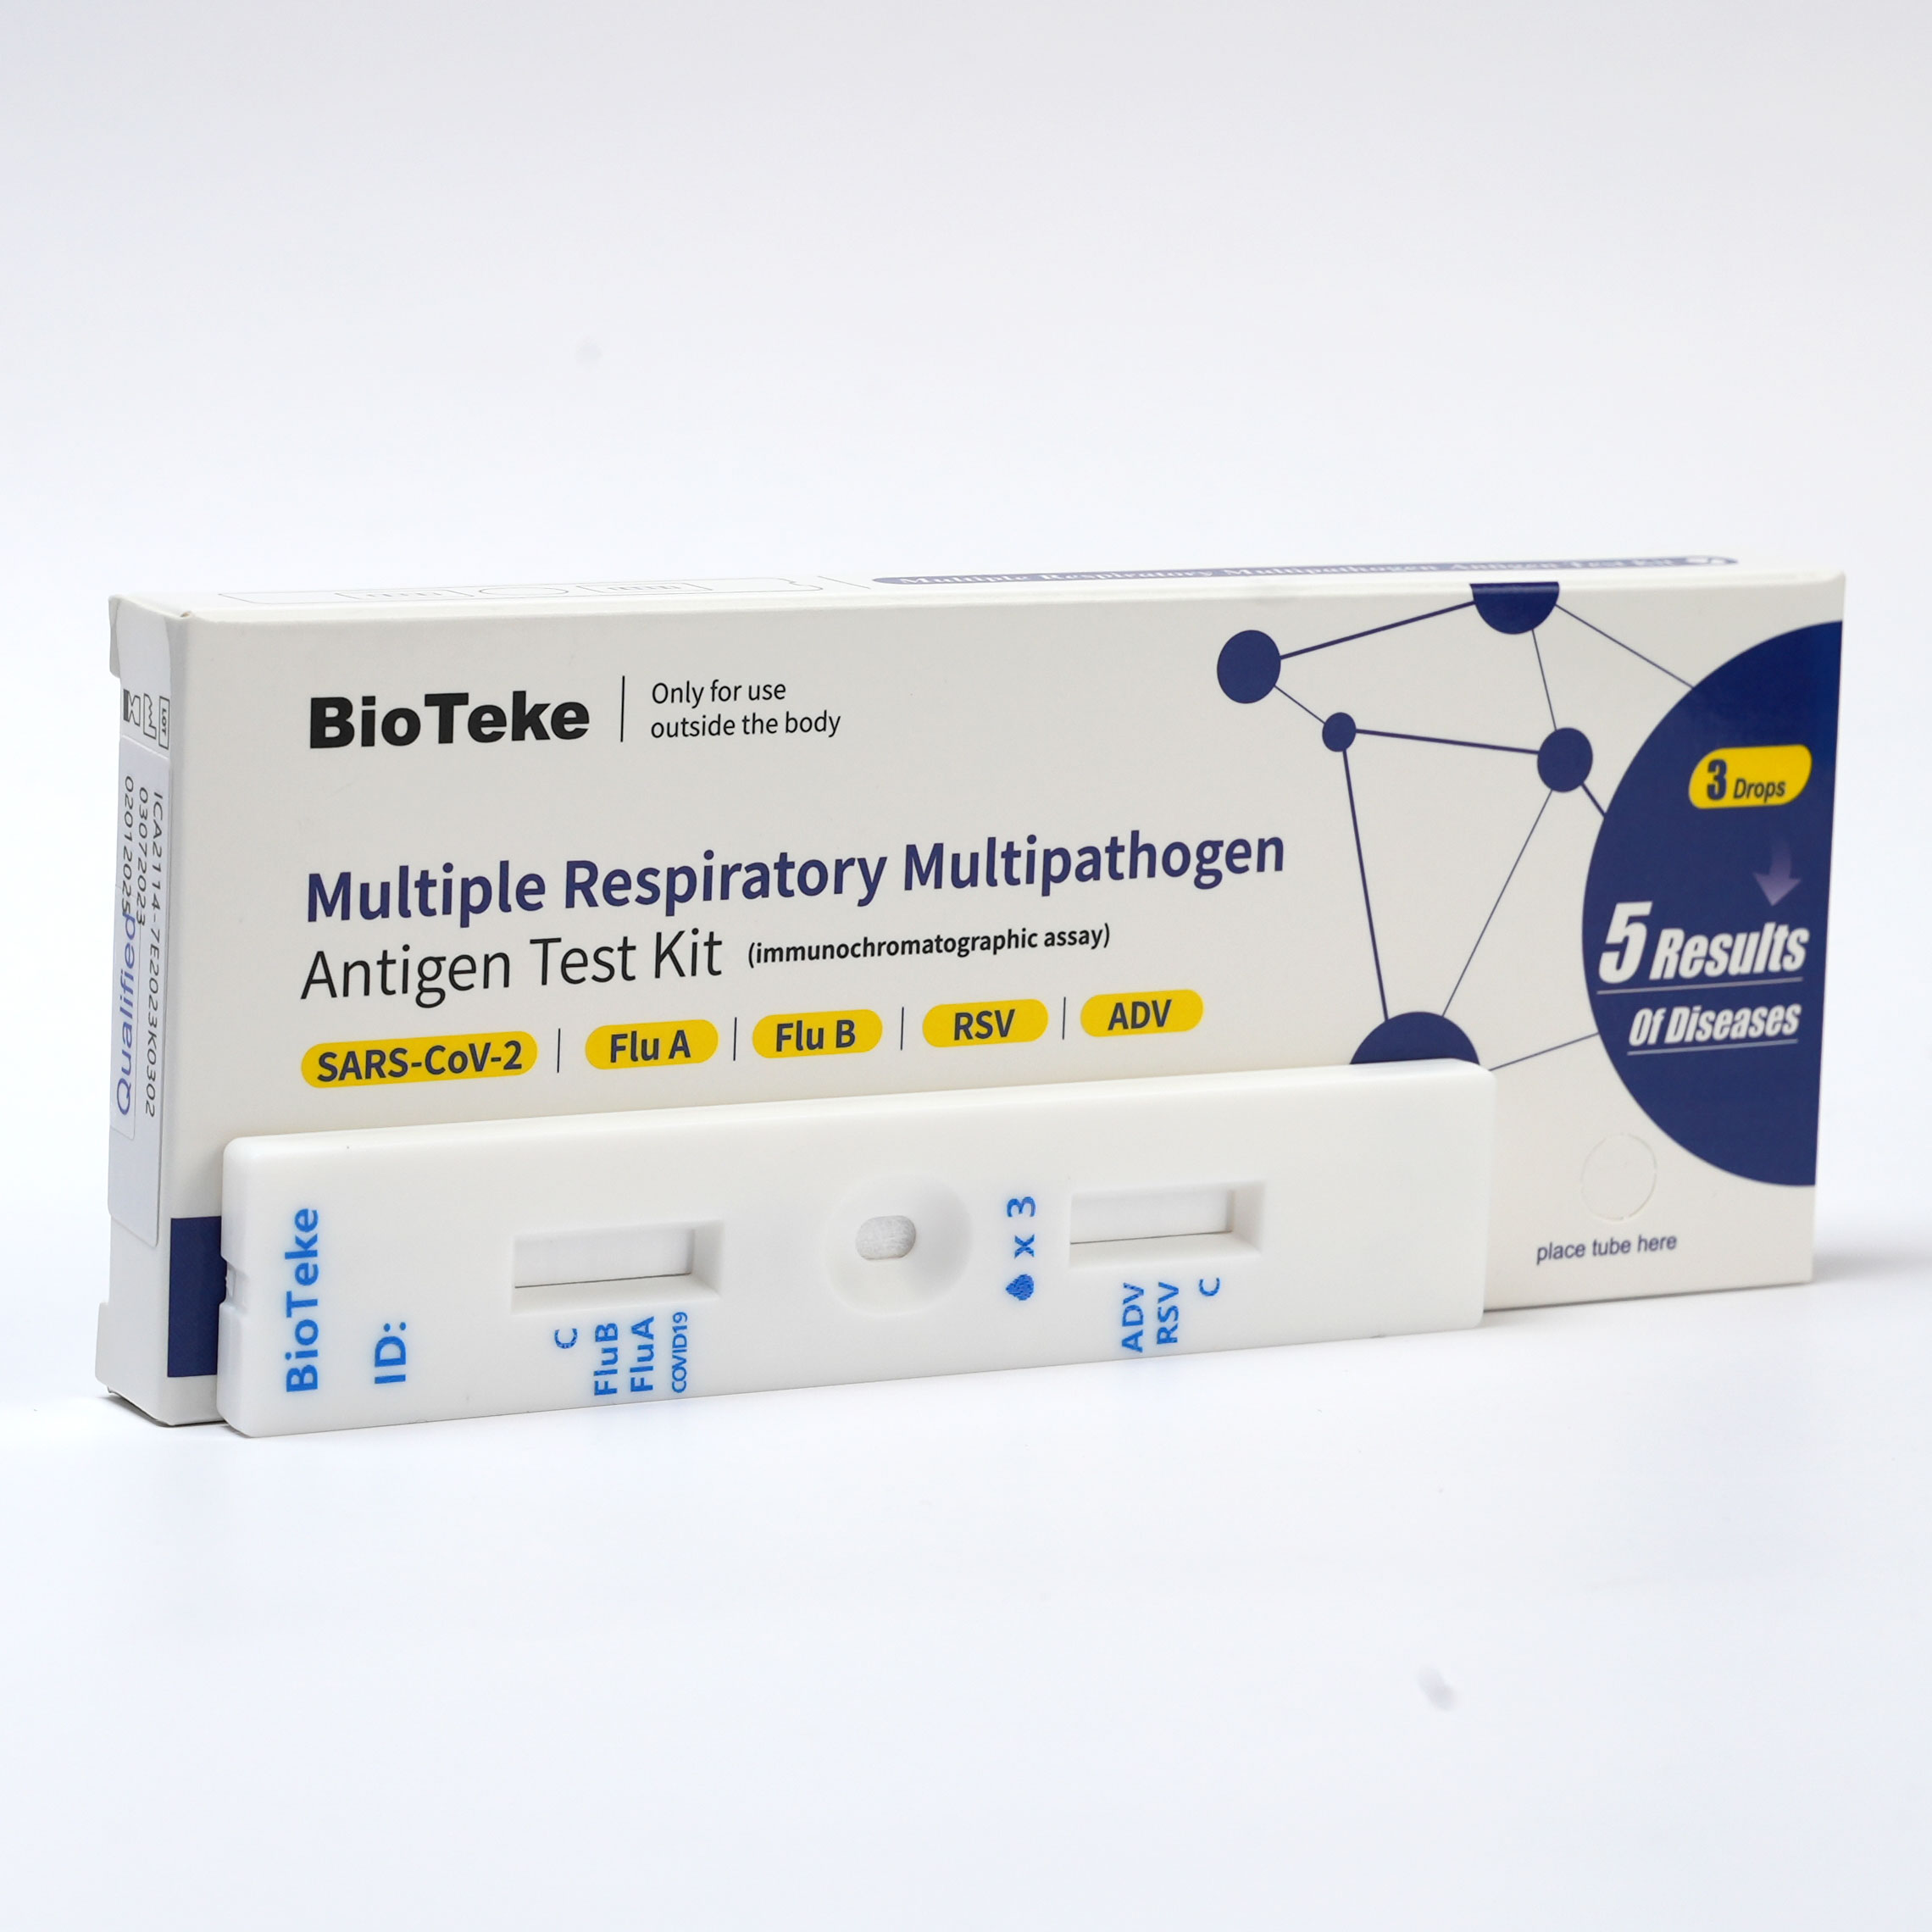 SARS-CoV-2 / Flu A / Flu B / RSV / ADV / MP مجموعة اختبار المستضد السريع